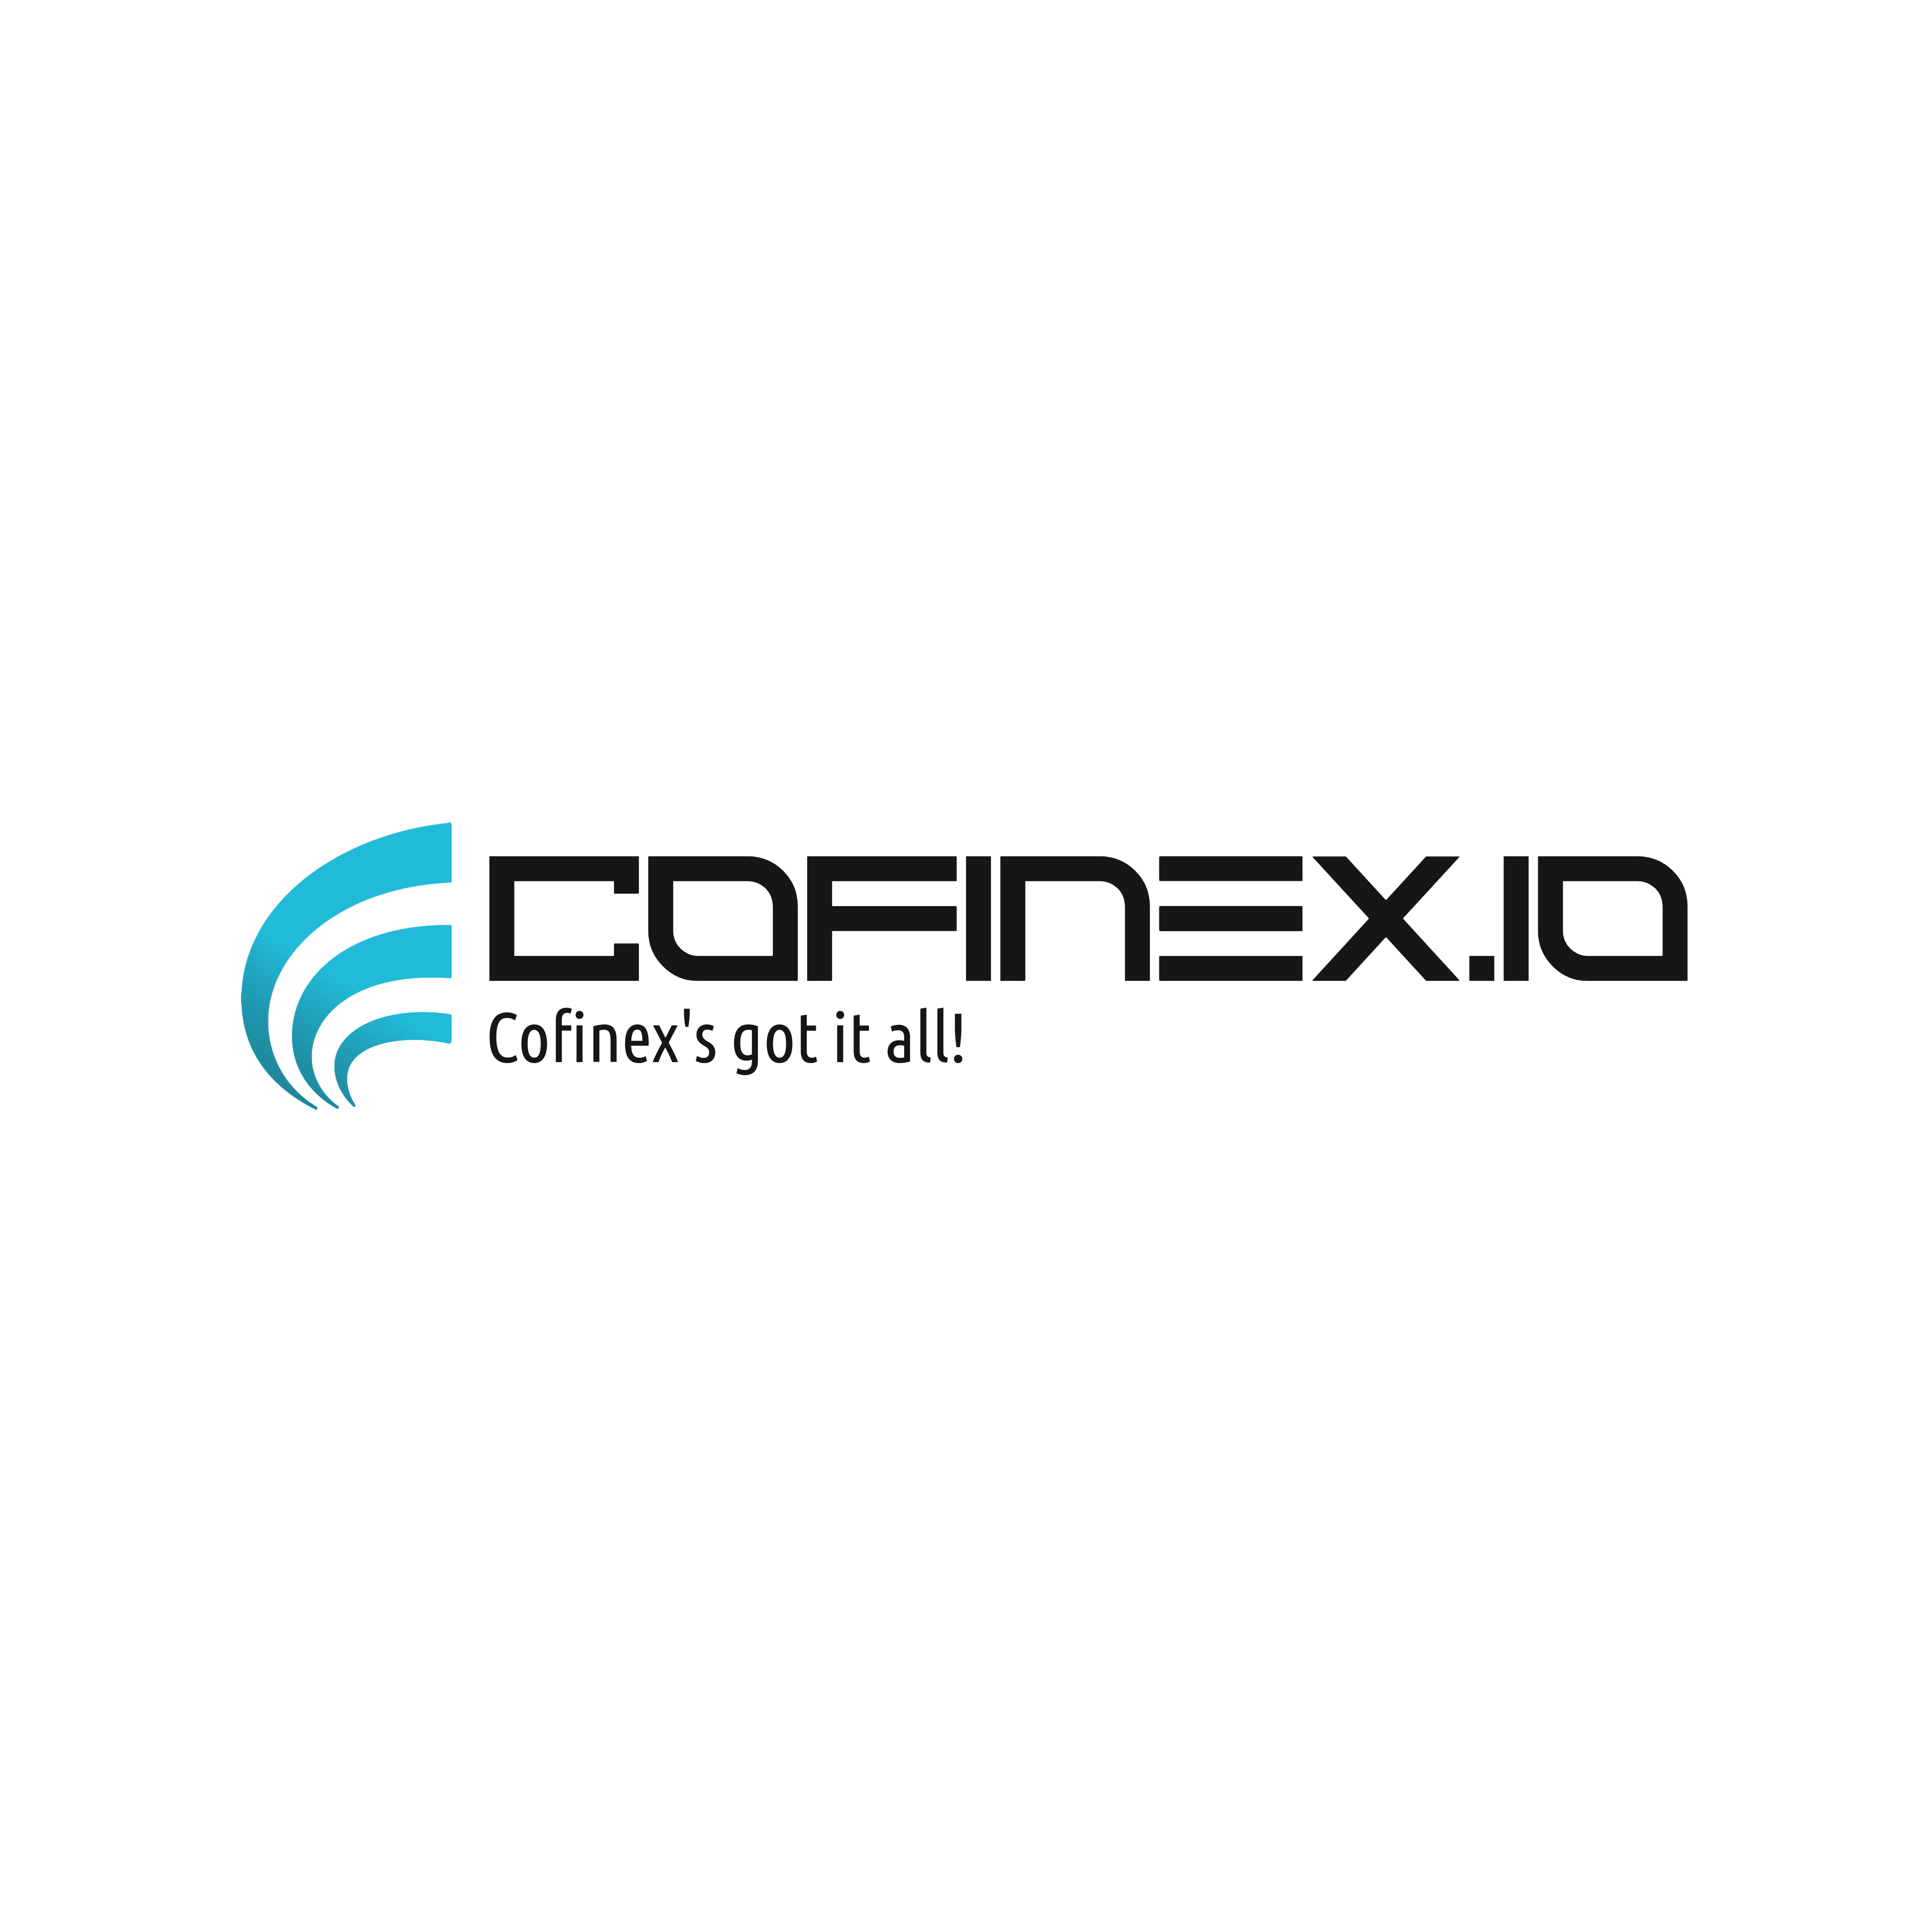 Cofinex